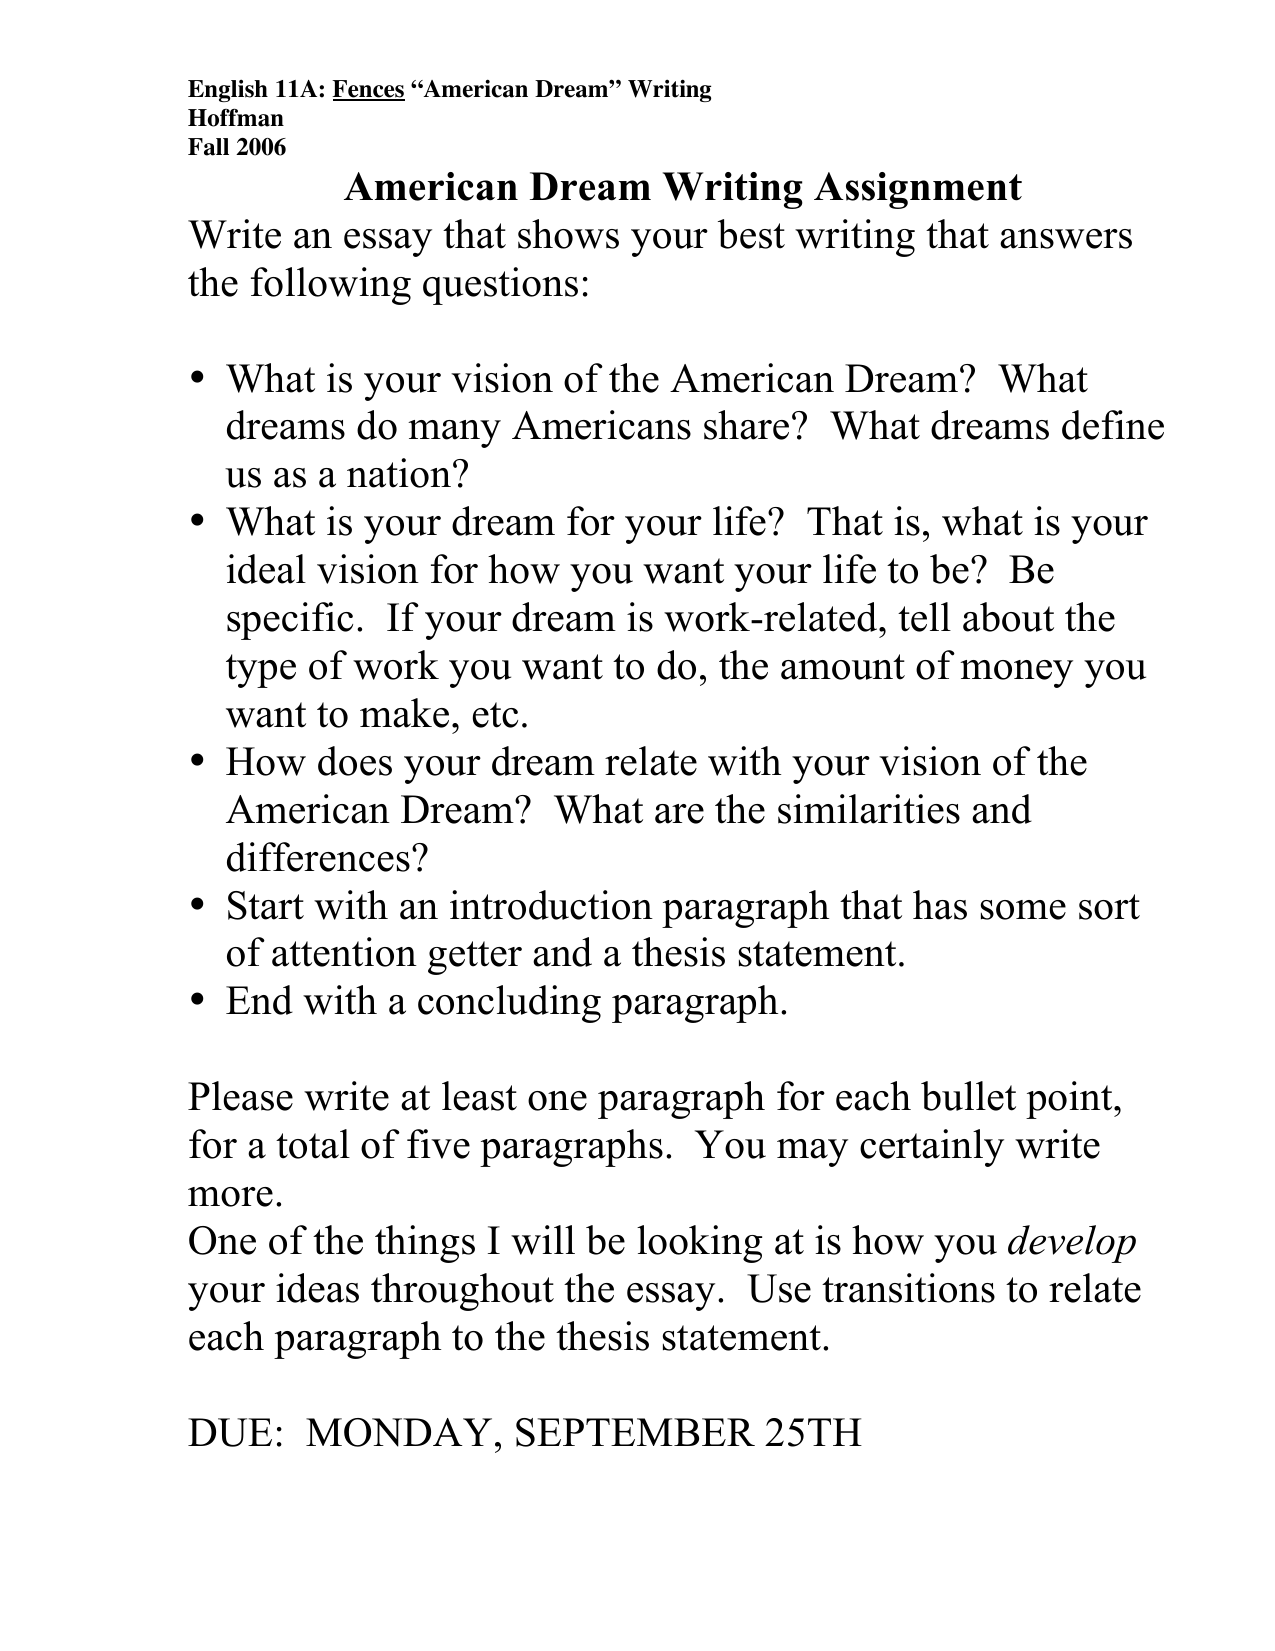 An essay on dreams